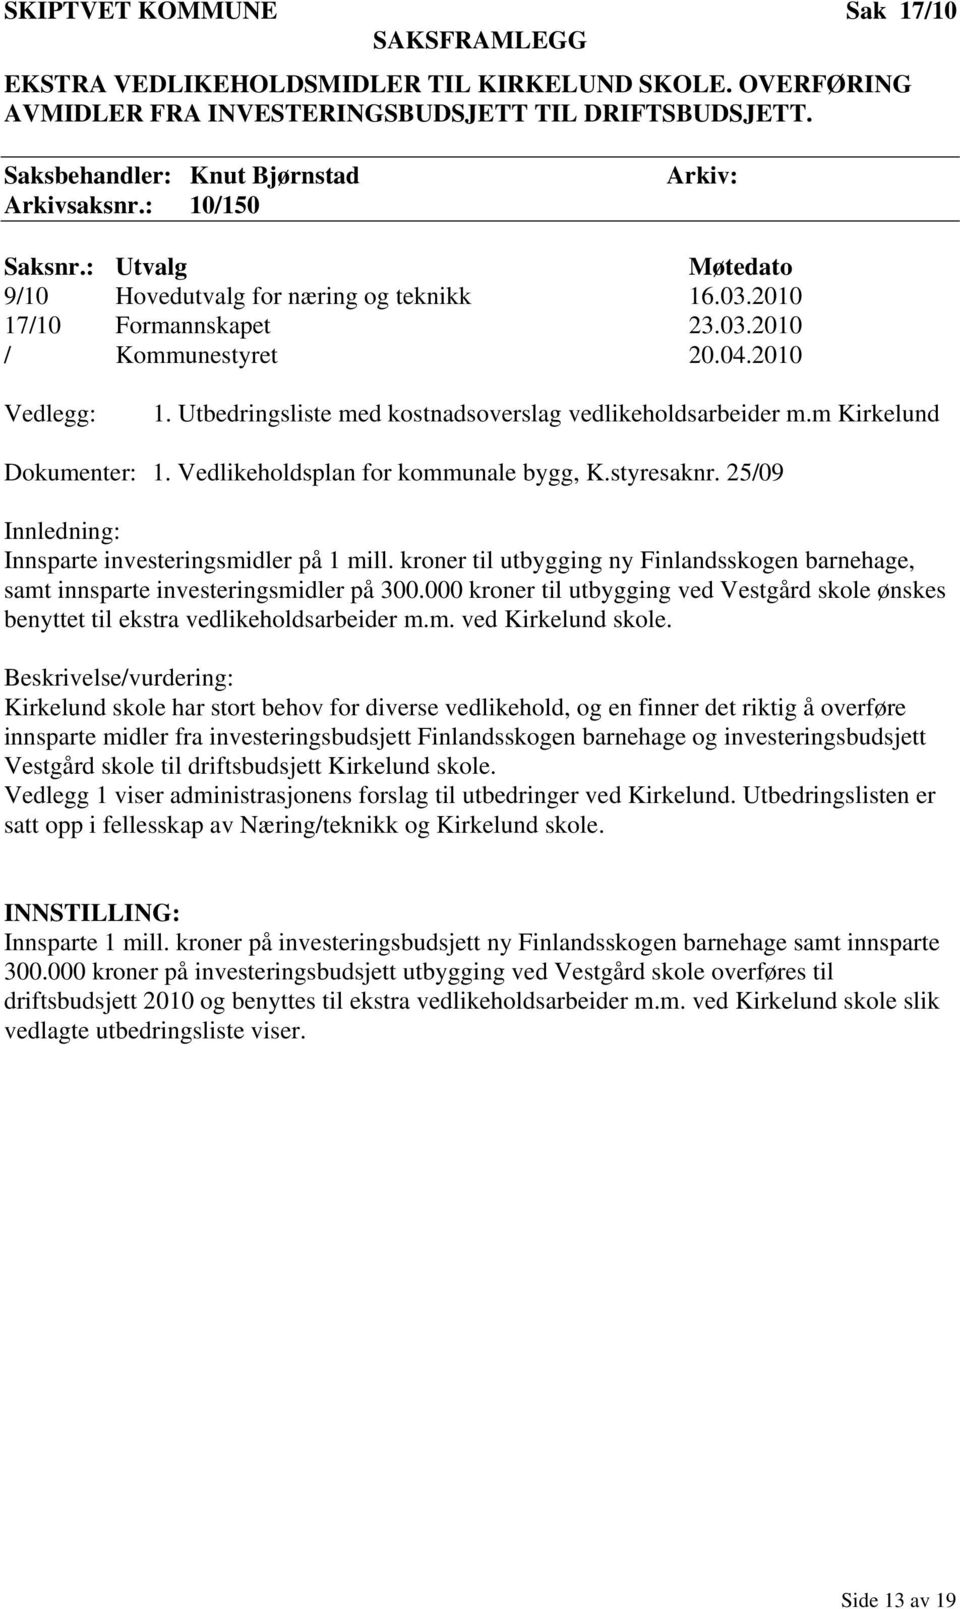 m Kirkelund Dokumenter: 1. Vedlikeholdsplan for kommunale bygg, K.styresaknr. 25/09 Innledning: Innsparte investeringsmidler på 1 mill.